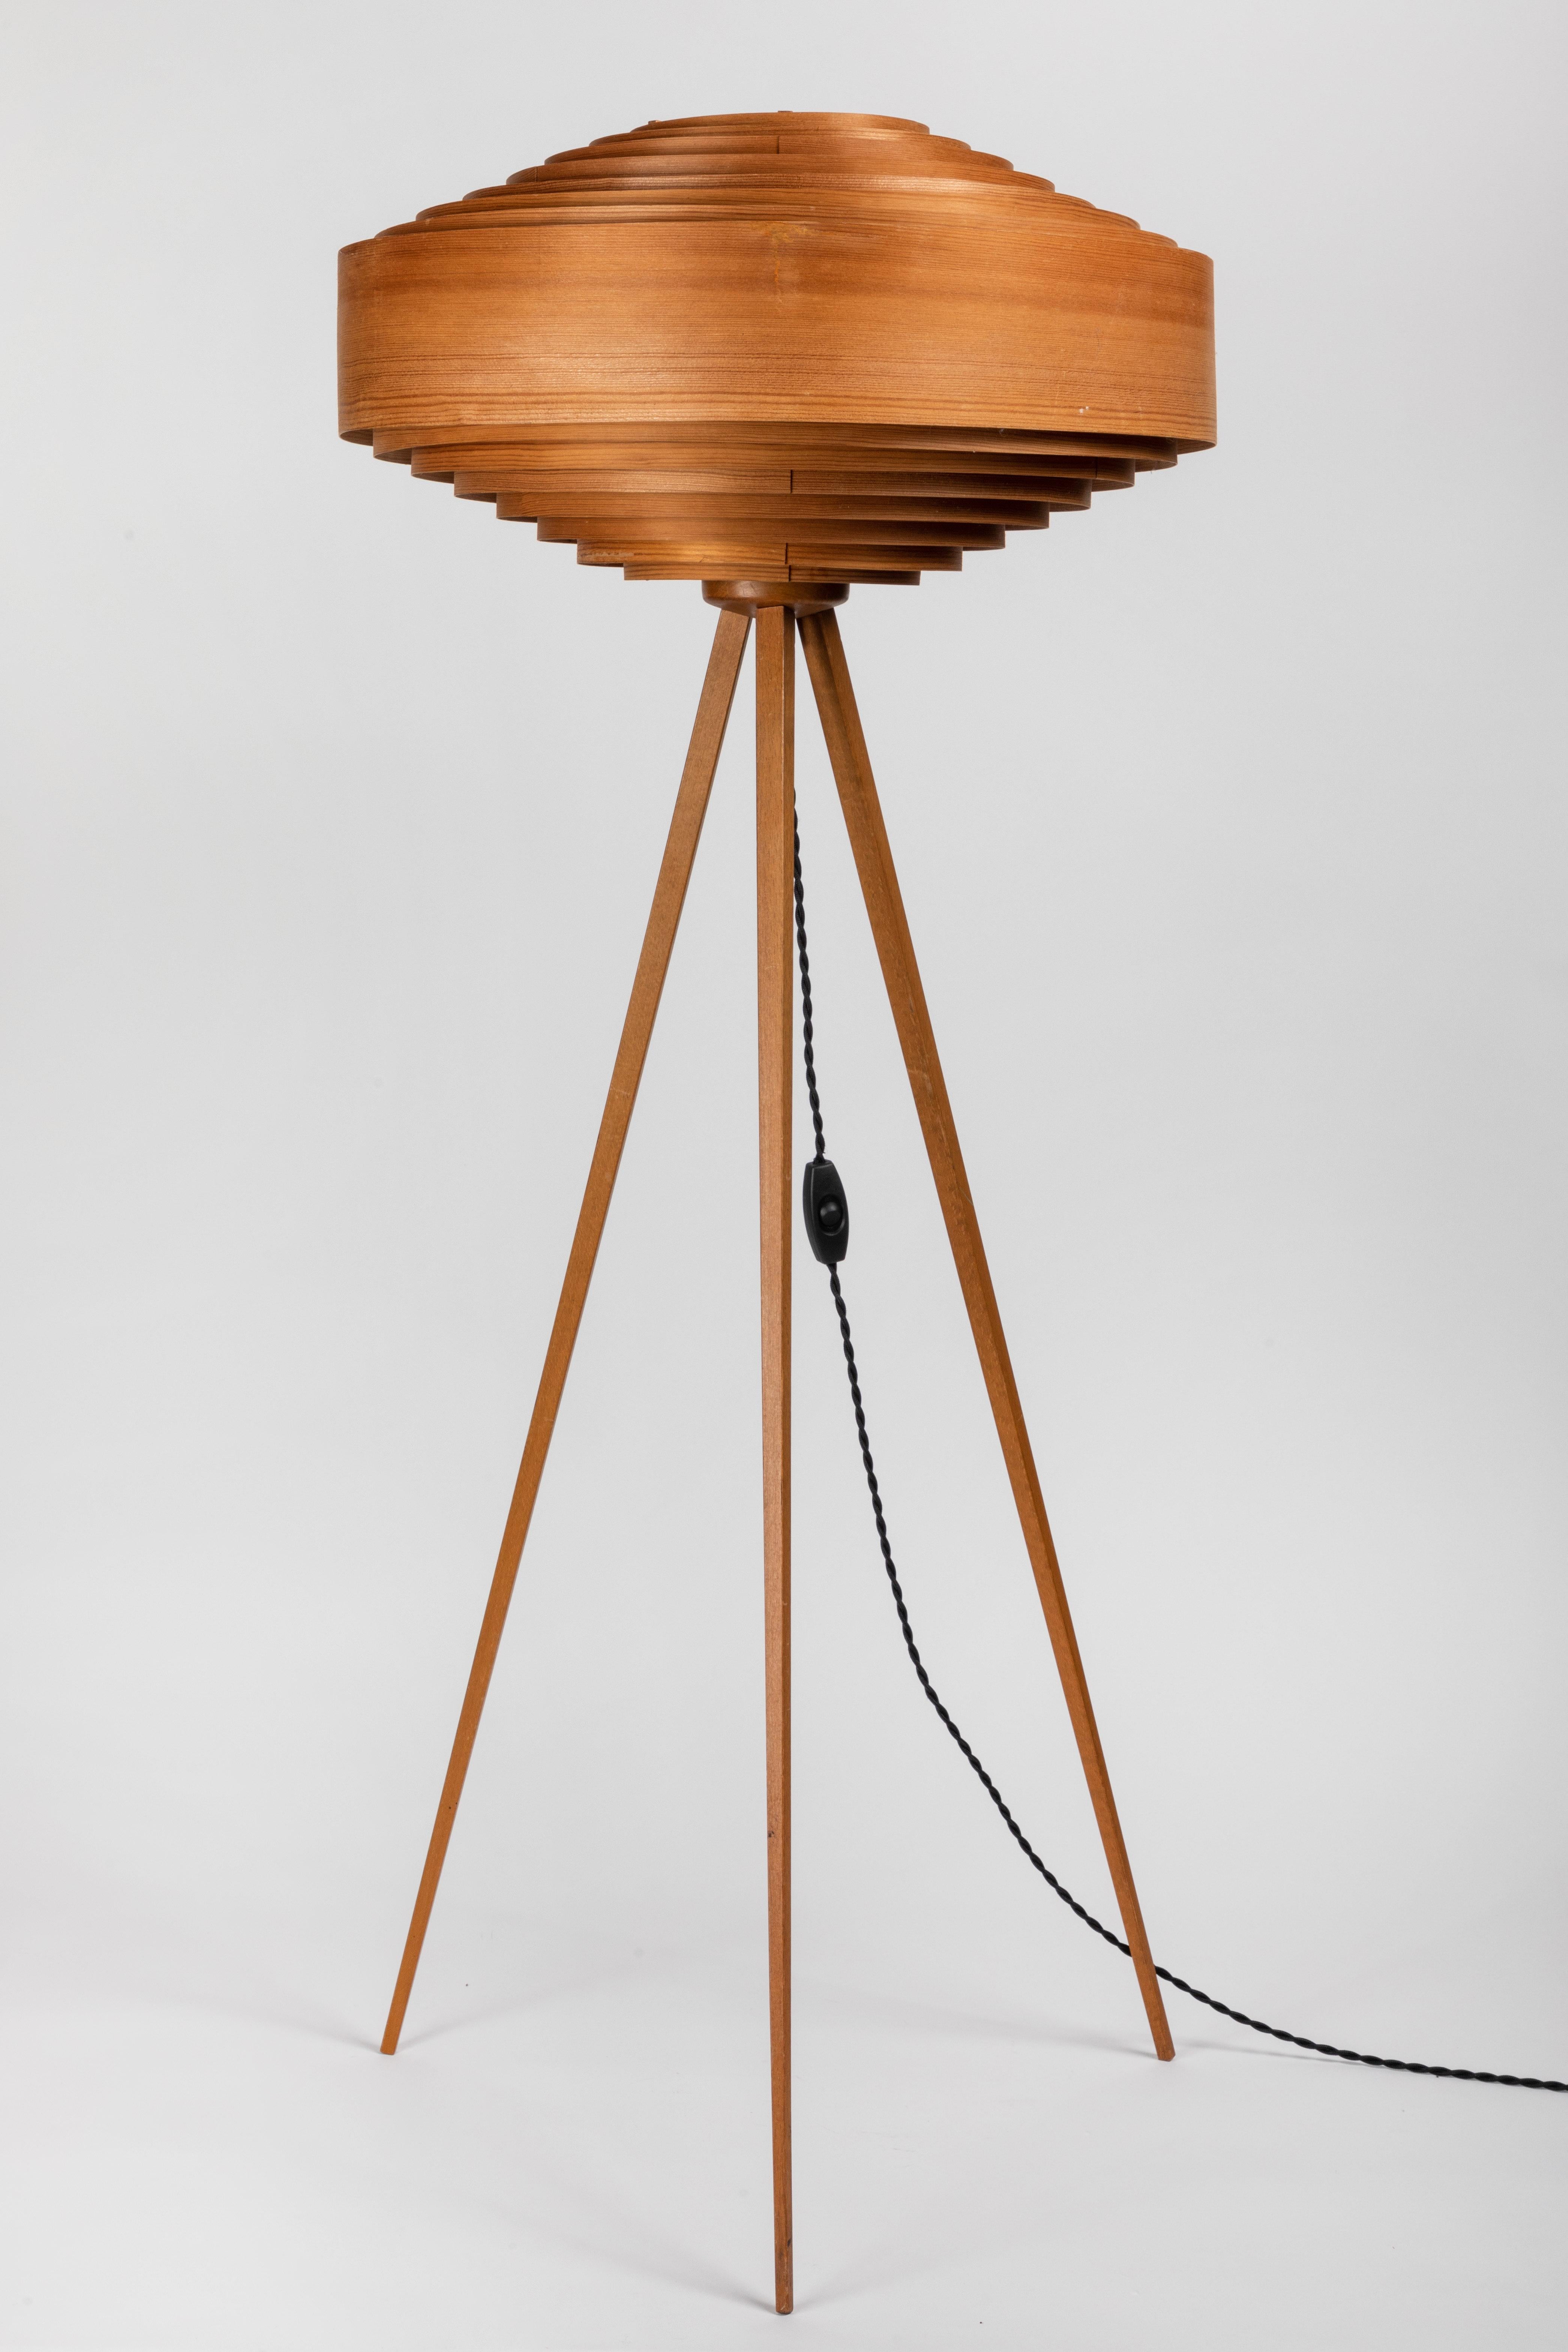 1960s Hans-Agne Jakobsson Wood Tripod Floor Lamp for AB Ellysett 8